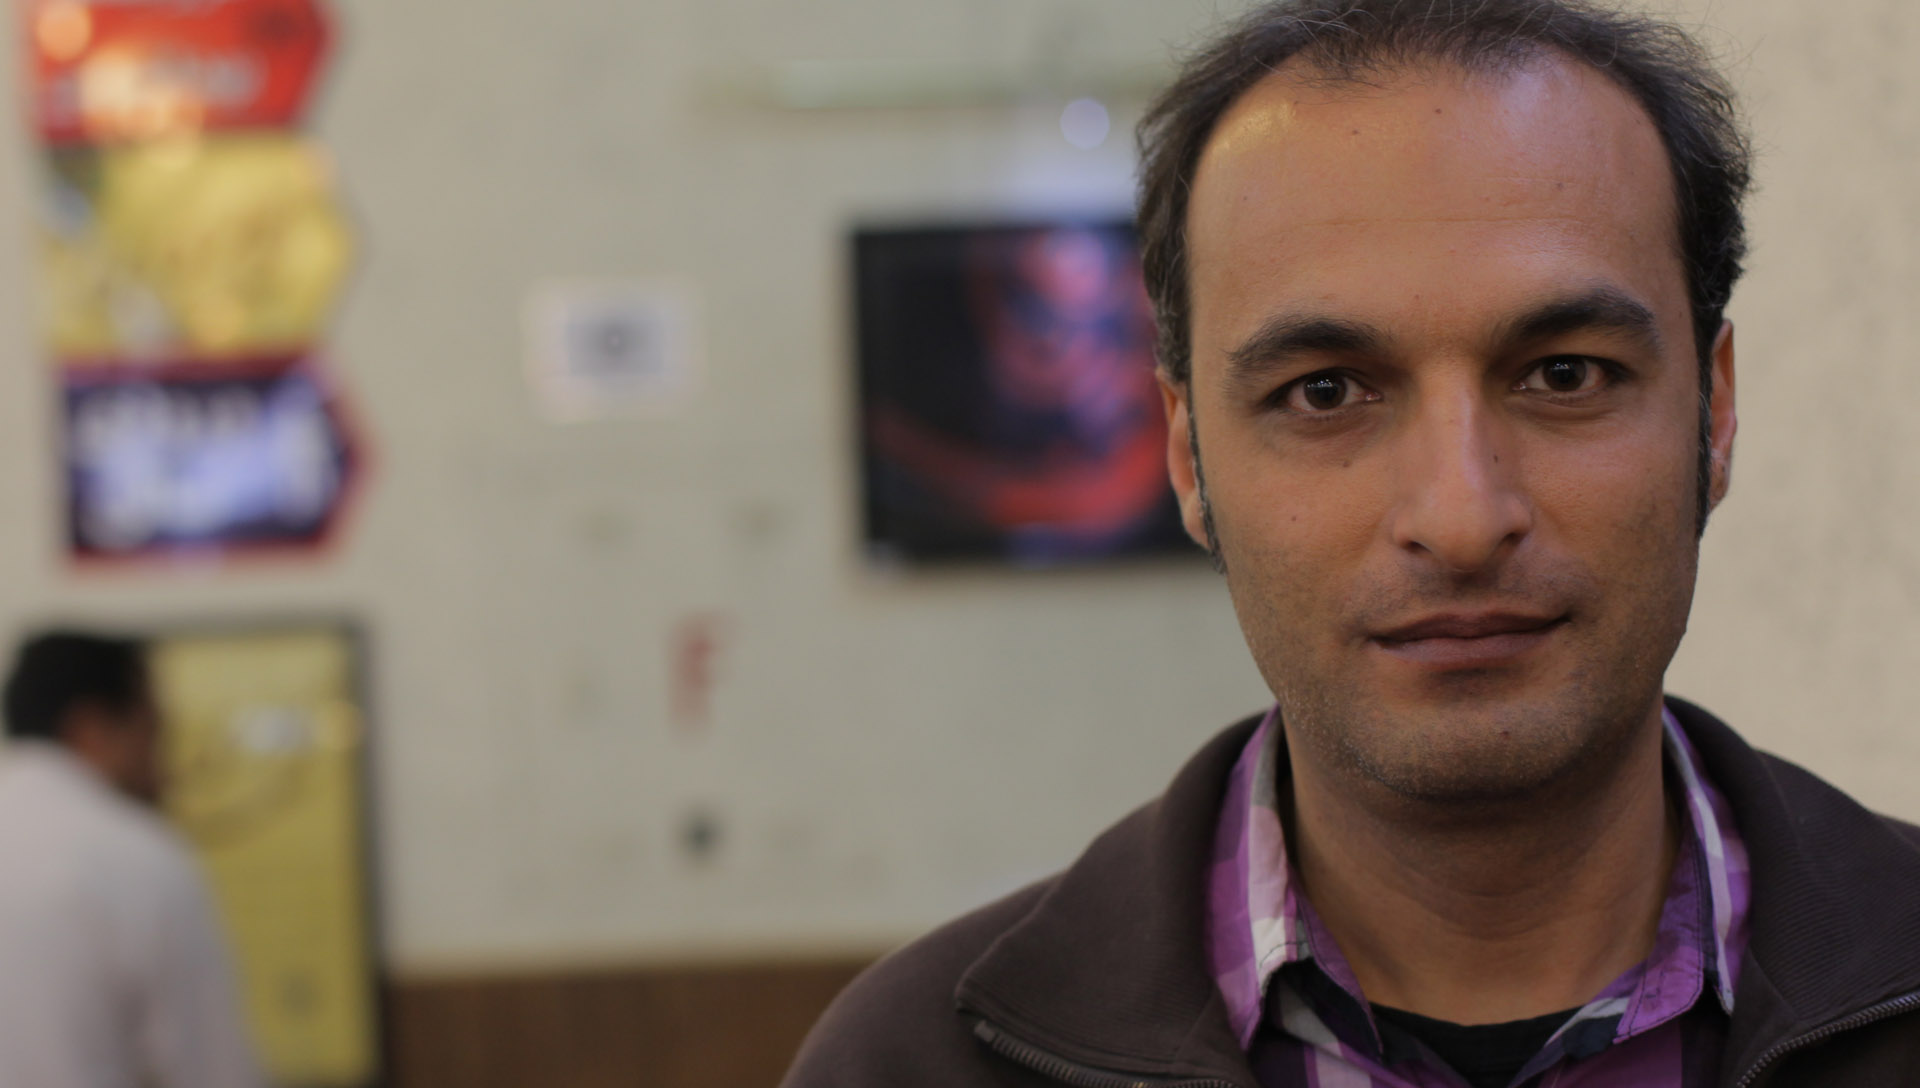 محسن مقدم شرکت فیلمسازی زوم شیراز